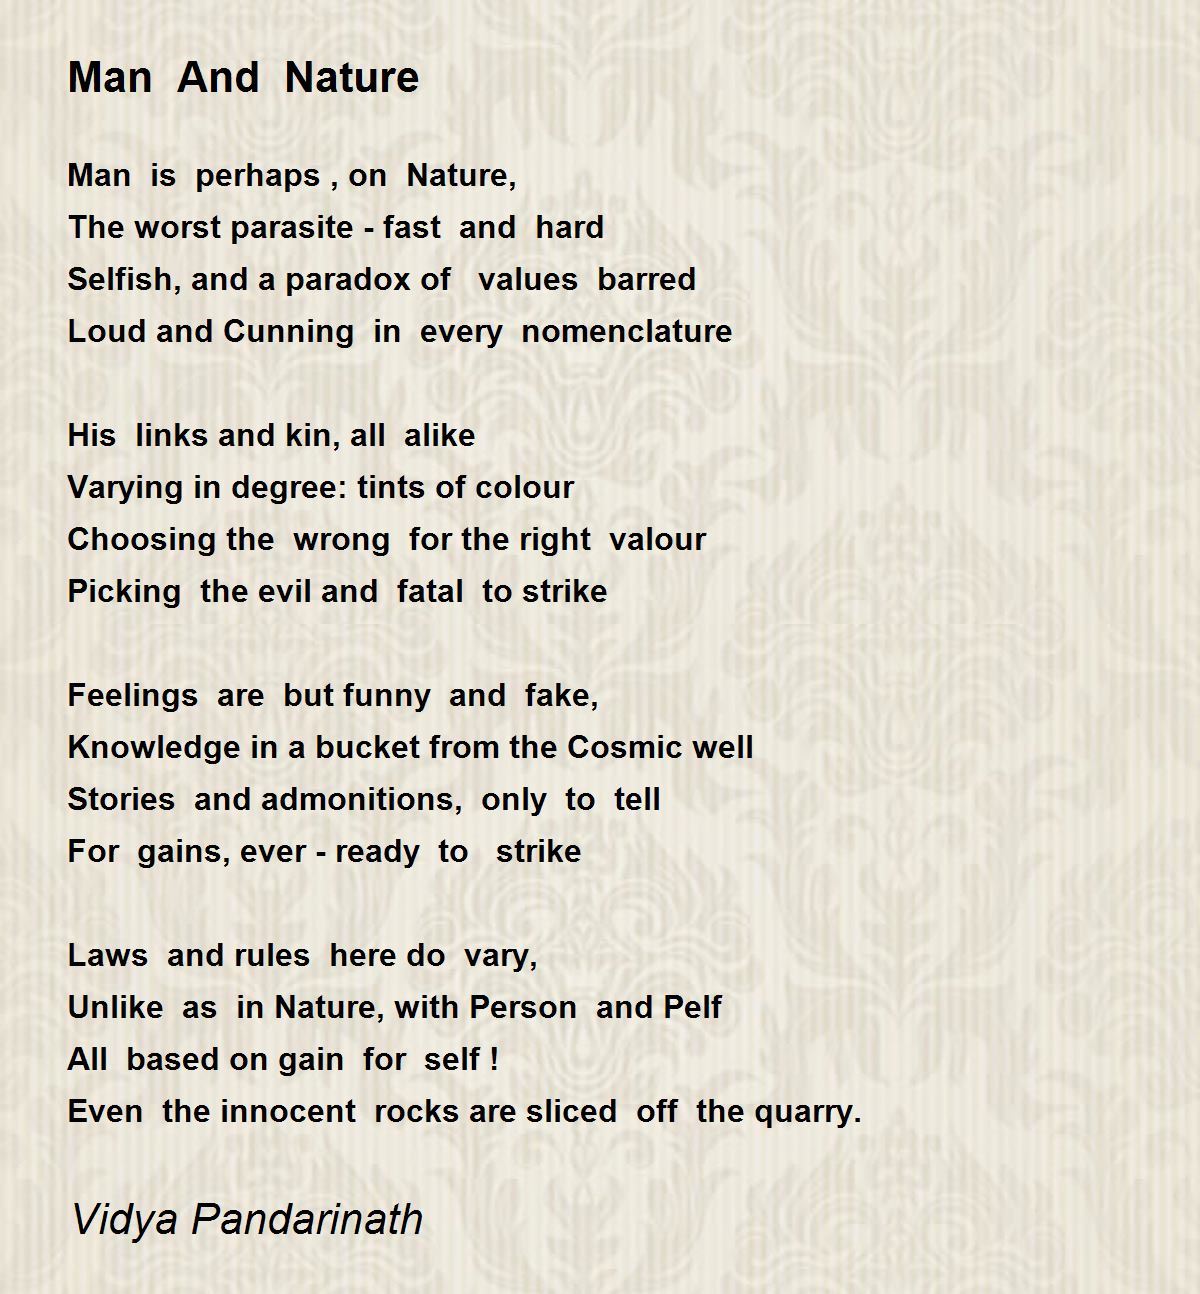 Man And Nature - Man And Nature Poem by Vidya Pandarinath